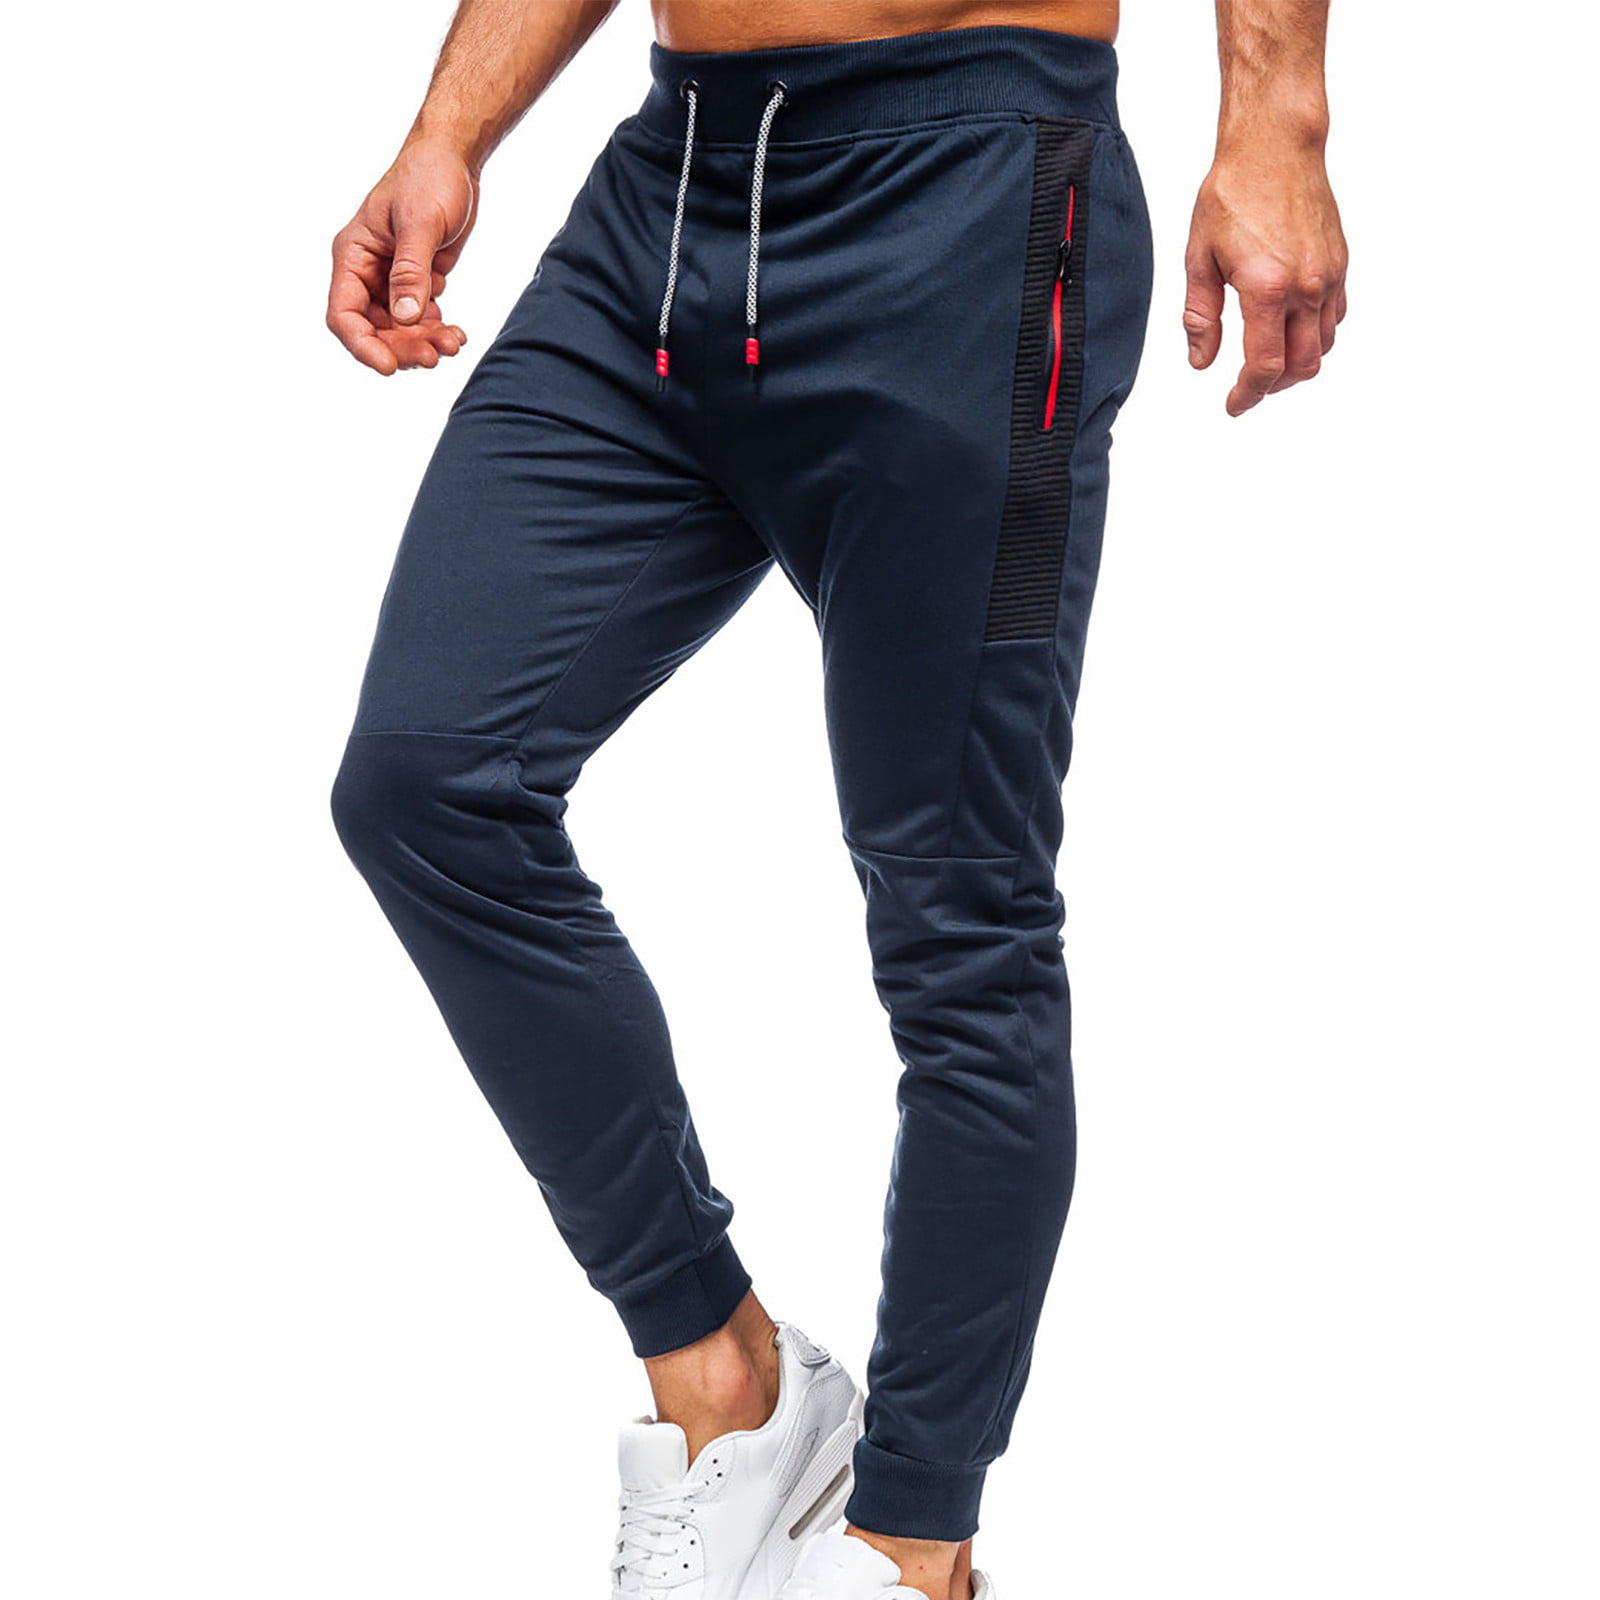 Details about   Men Solid Long Leggings Pants Shorts Trouserx Compression Base Layer T-Shirt Top 